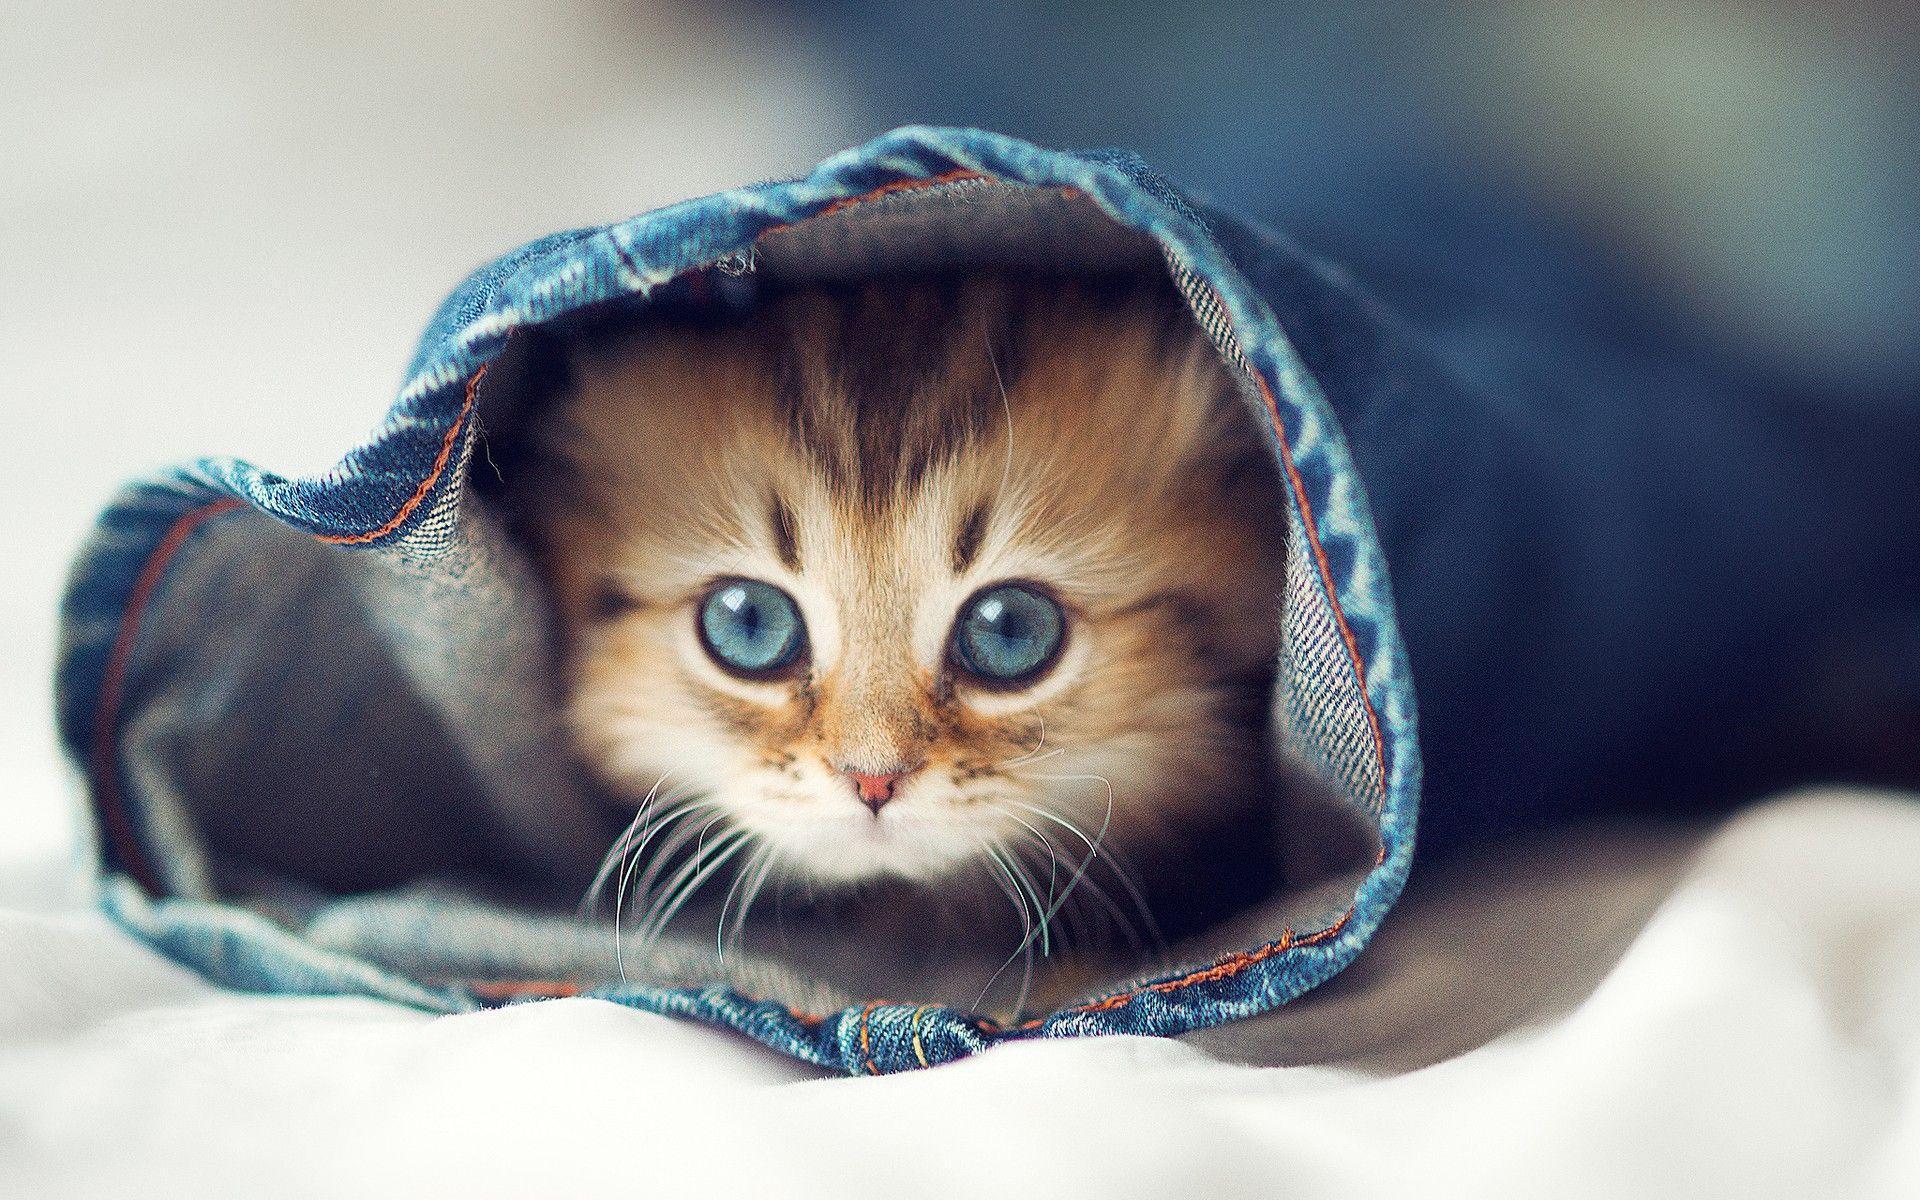 Tumblr Cute Cat Desktop Wallpapers - Top Free Tumblr Cute ...